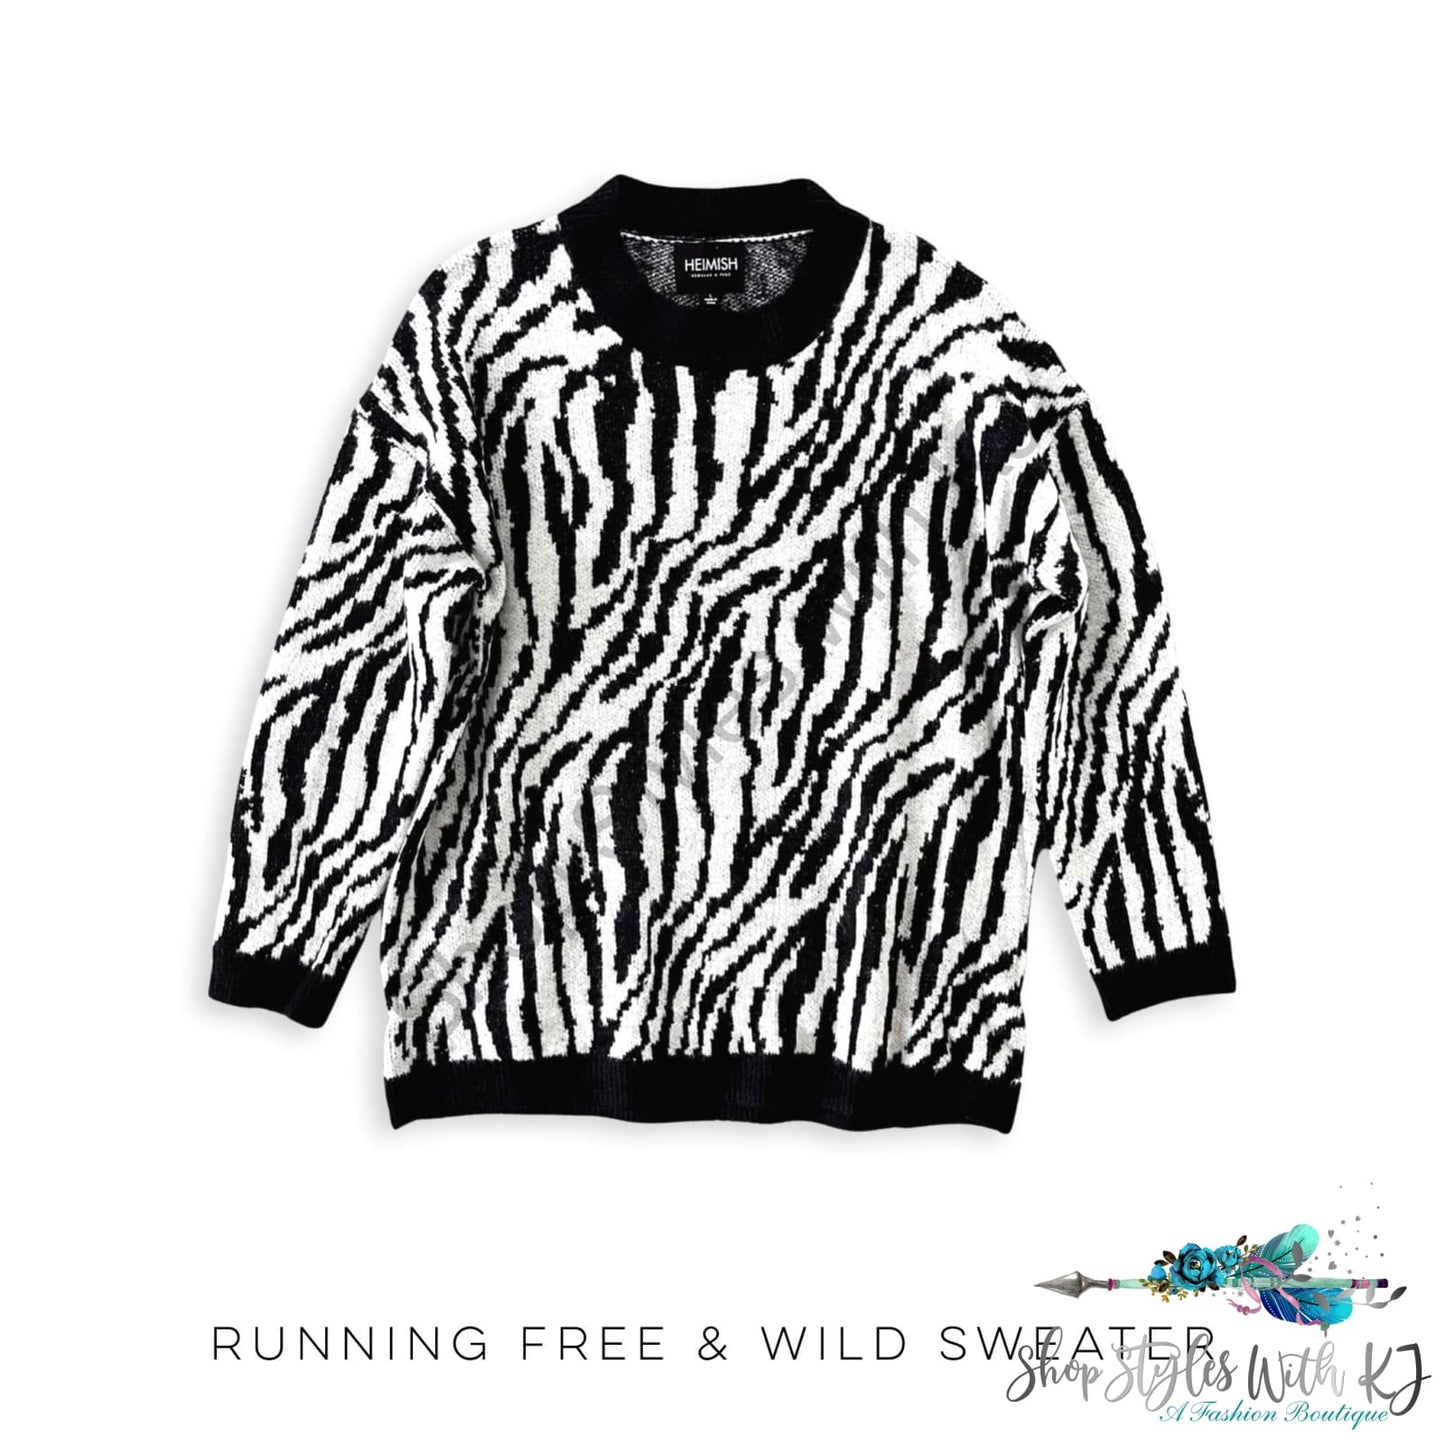 Running Free & Wild Sweater Heimish